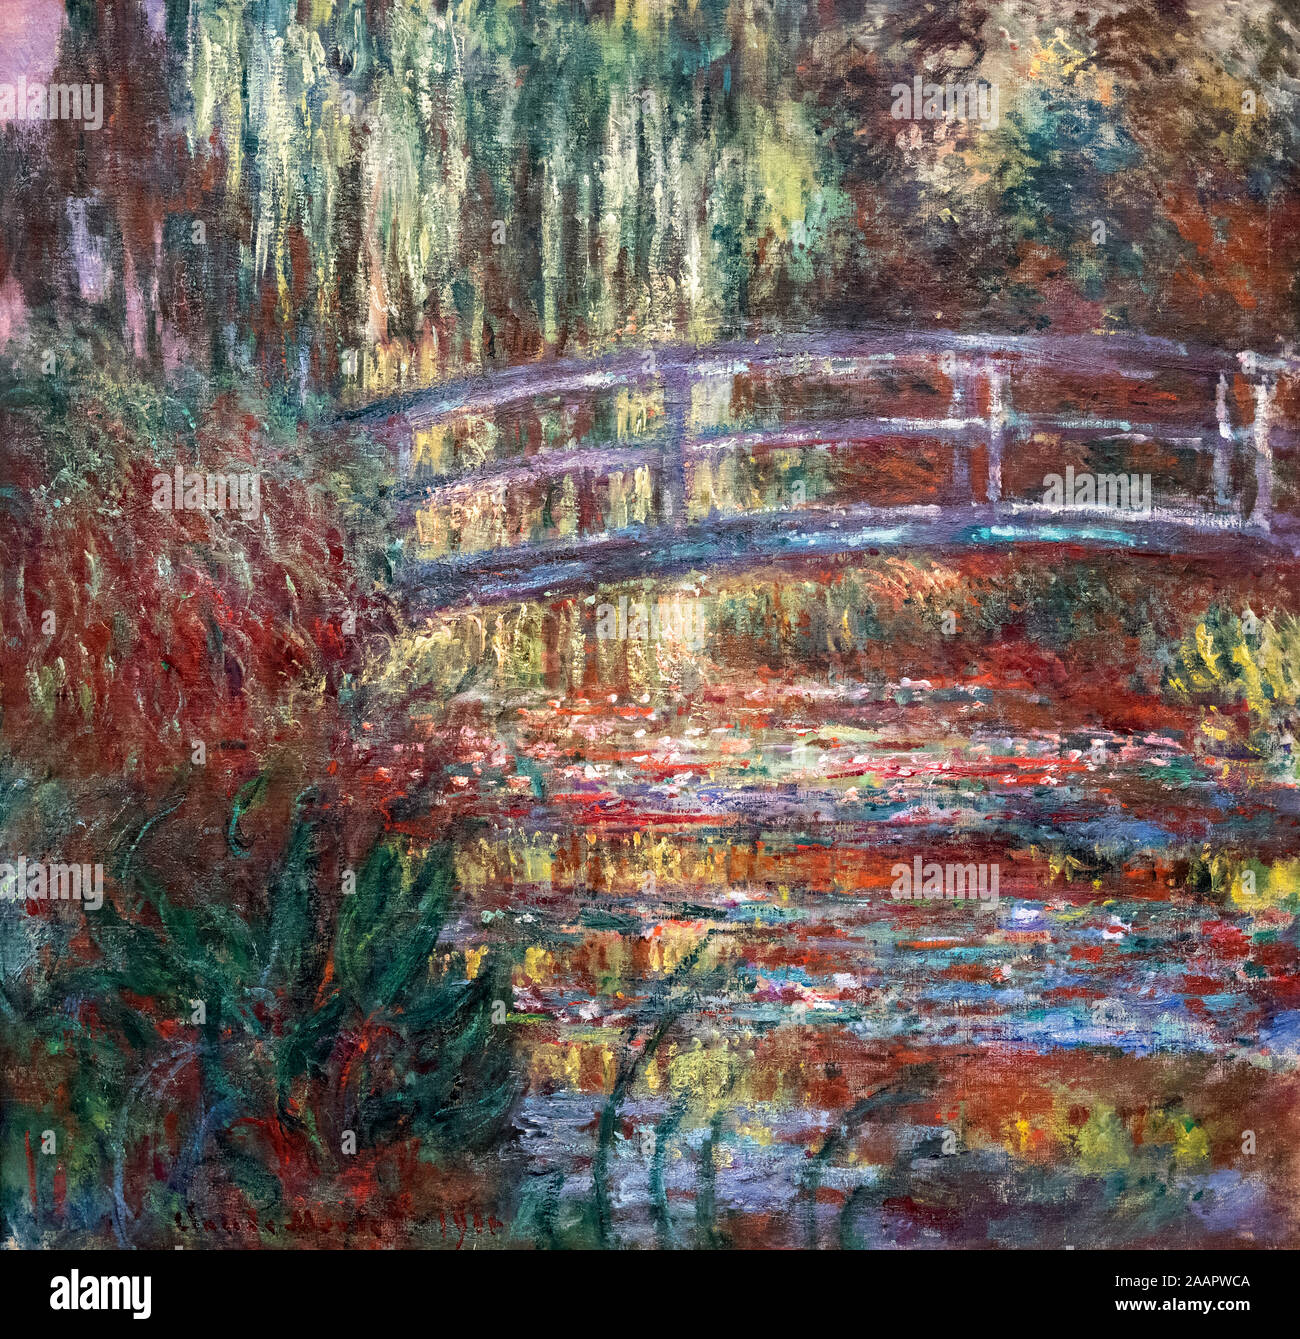 Seerosenteich von Claude Monet (1840-1926), Öl auf Leinwand, 1900 Stockfoto